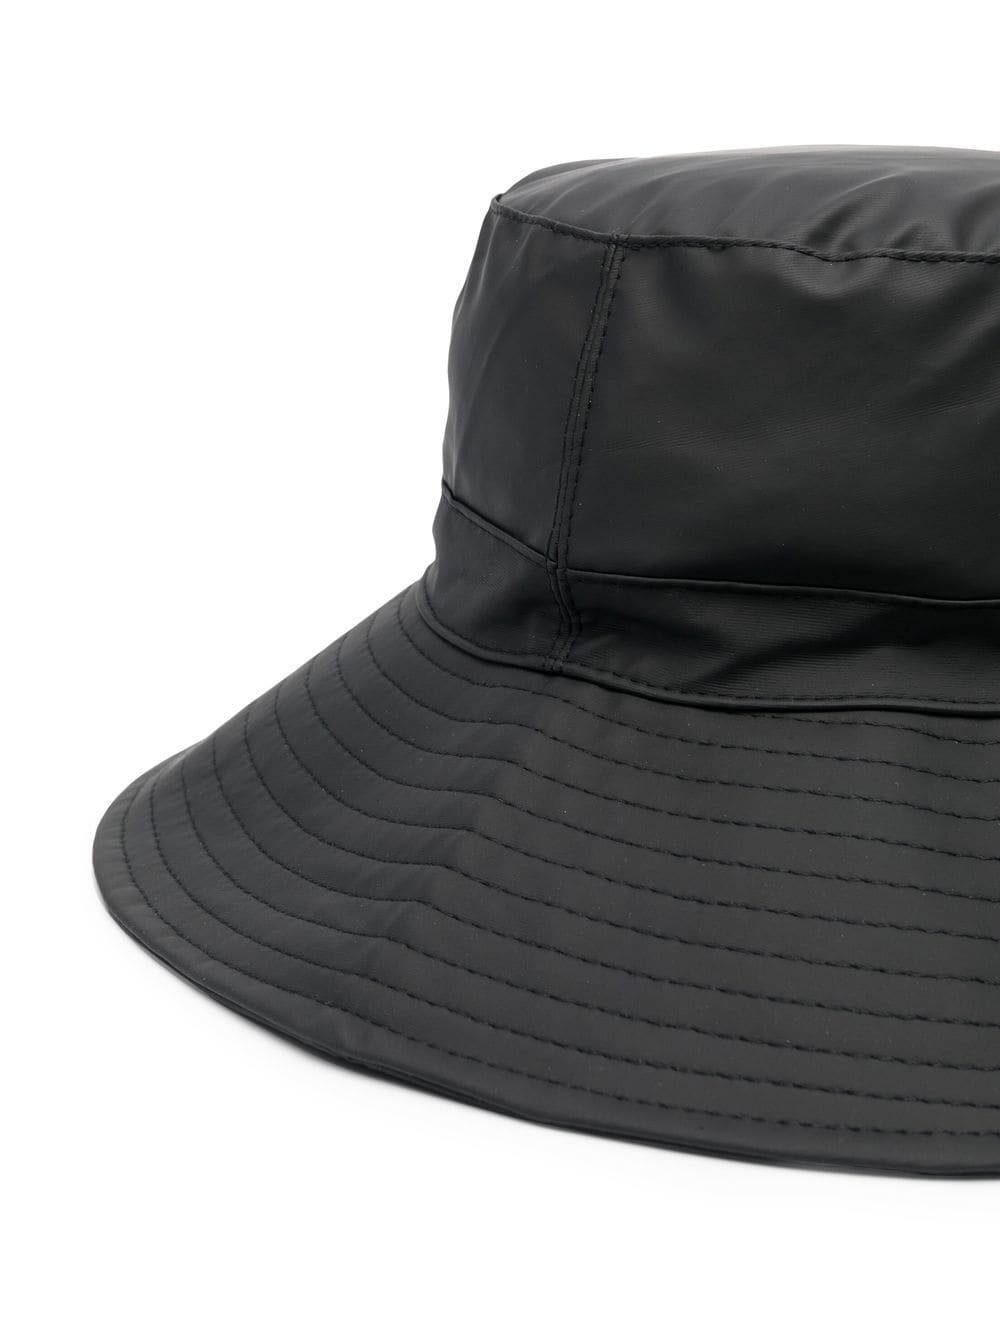 Black wide brim bucket hat